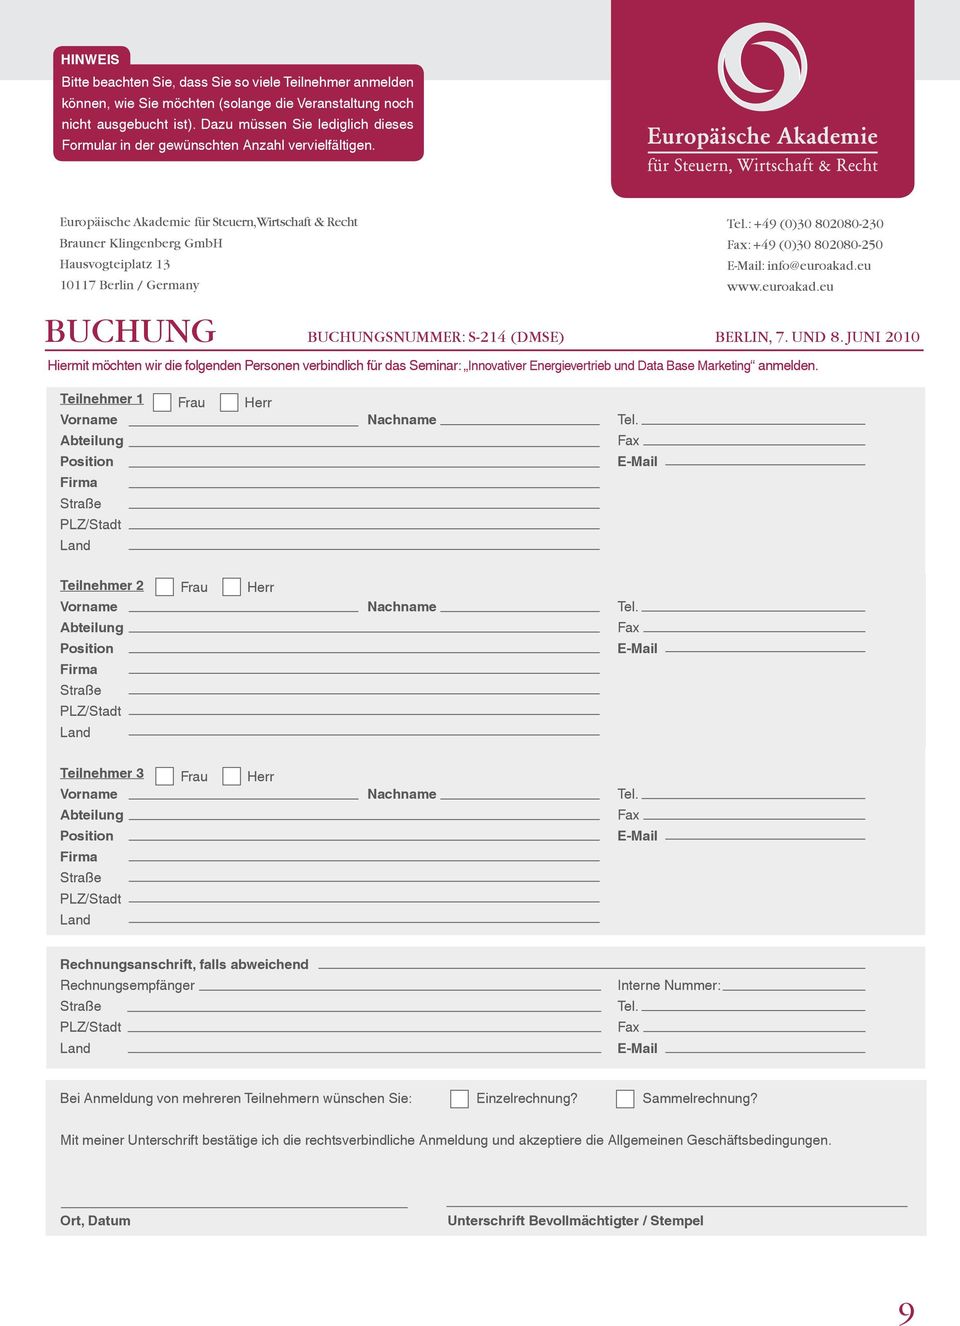 Europäische Akademie für Steuern, Wirtschaft & Recht Brauner Klingenberg GmbH Hausvogteiplatz 13 10117 Berlin / Germany Tel.: +49 (0)30 802080-230 Fax: +49 (0)30 802080-250 E-Mail: info@euroakad.